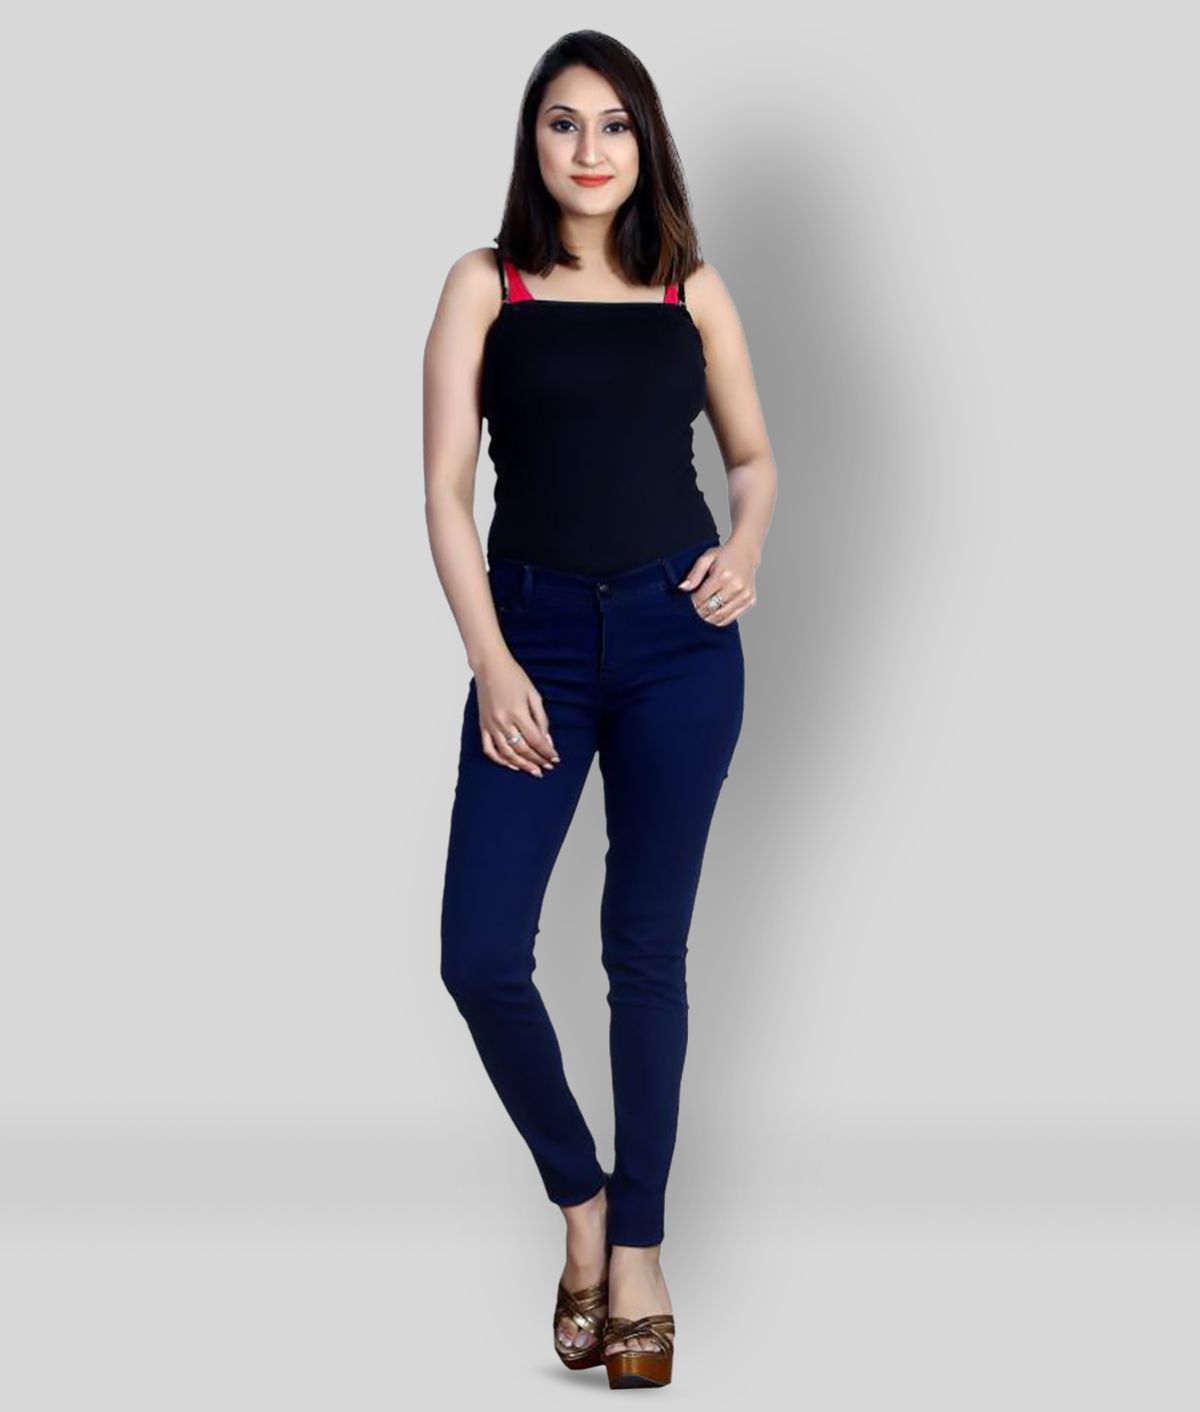 NiNe-Xm - Navy Blue Denim Women's Jeans ( Pack of 1 )